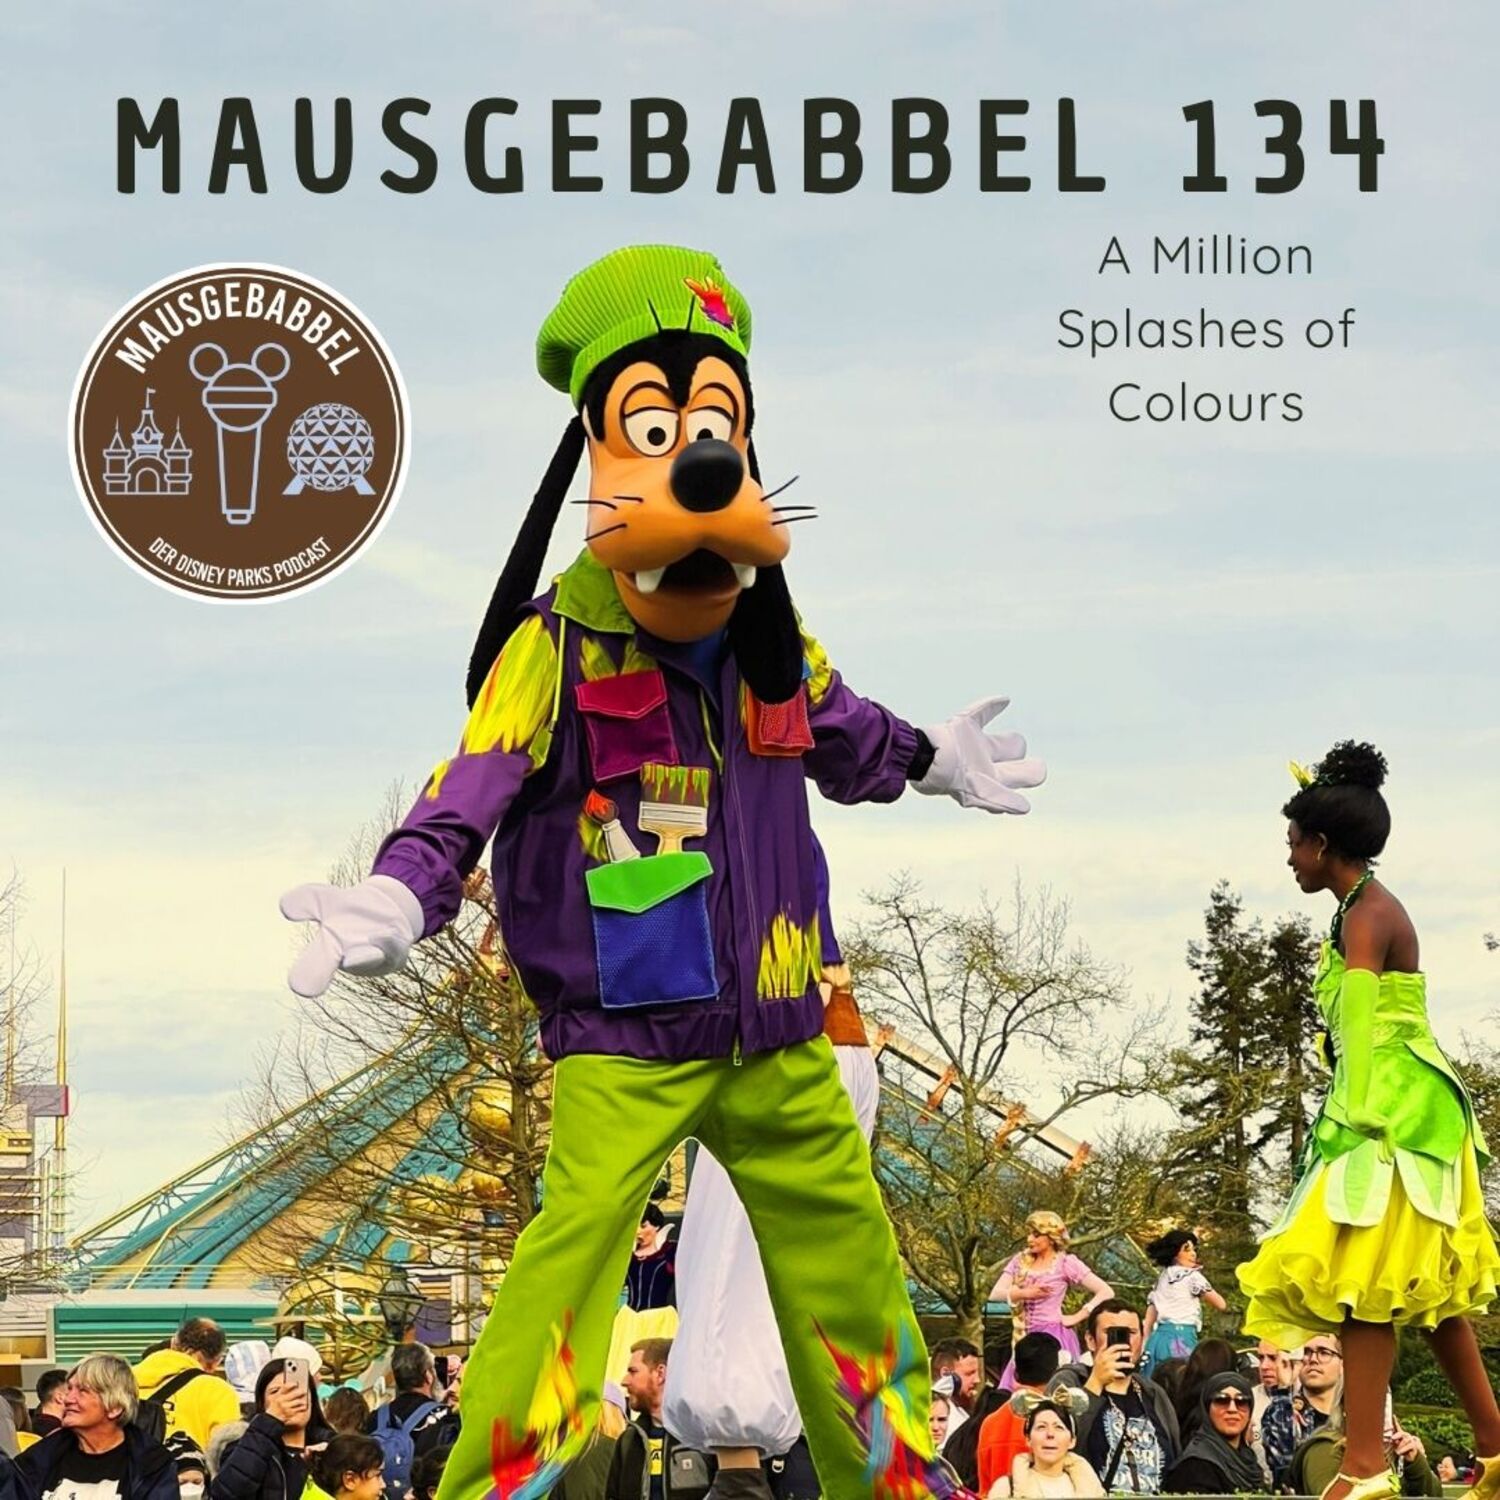 Mausgebabbel 134 – A Million Splashes of Colours in Disneyland Paris